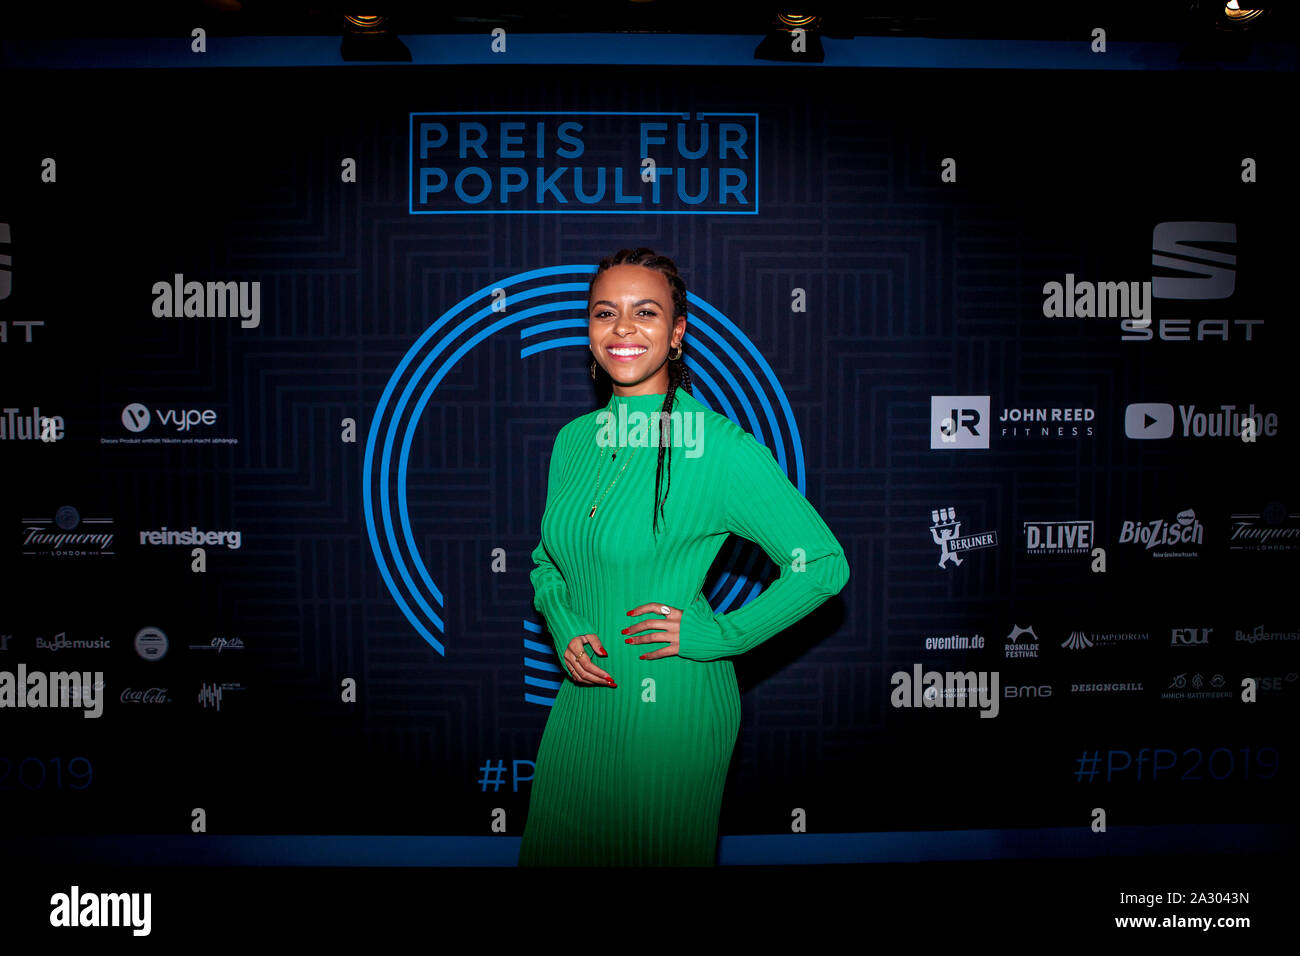 Aminata Belli bei der Preisverleihung für Popkultur 2019 im Tempodrom. Berlin, 02.10.2019 Stockfoto